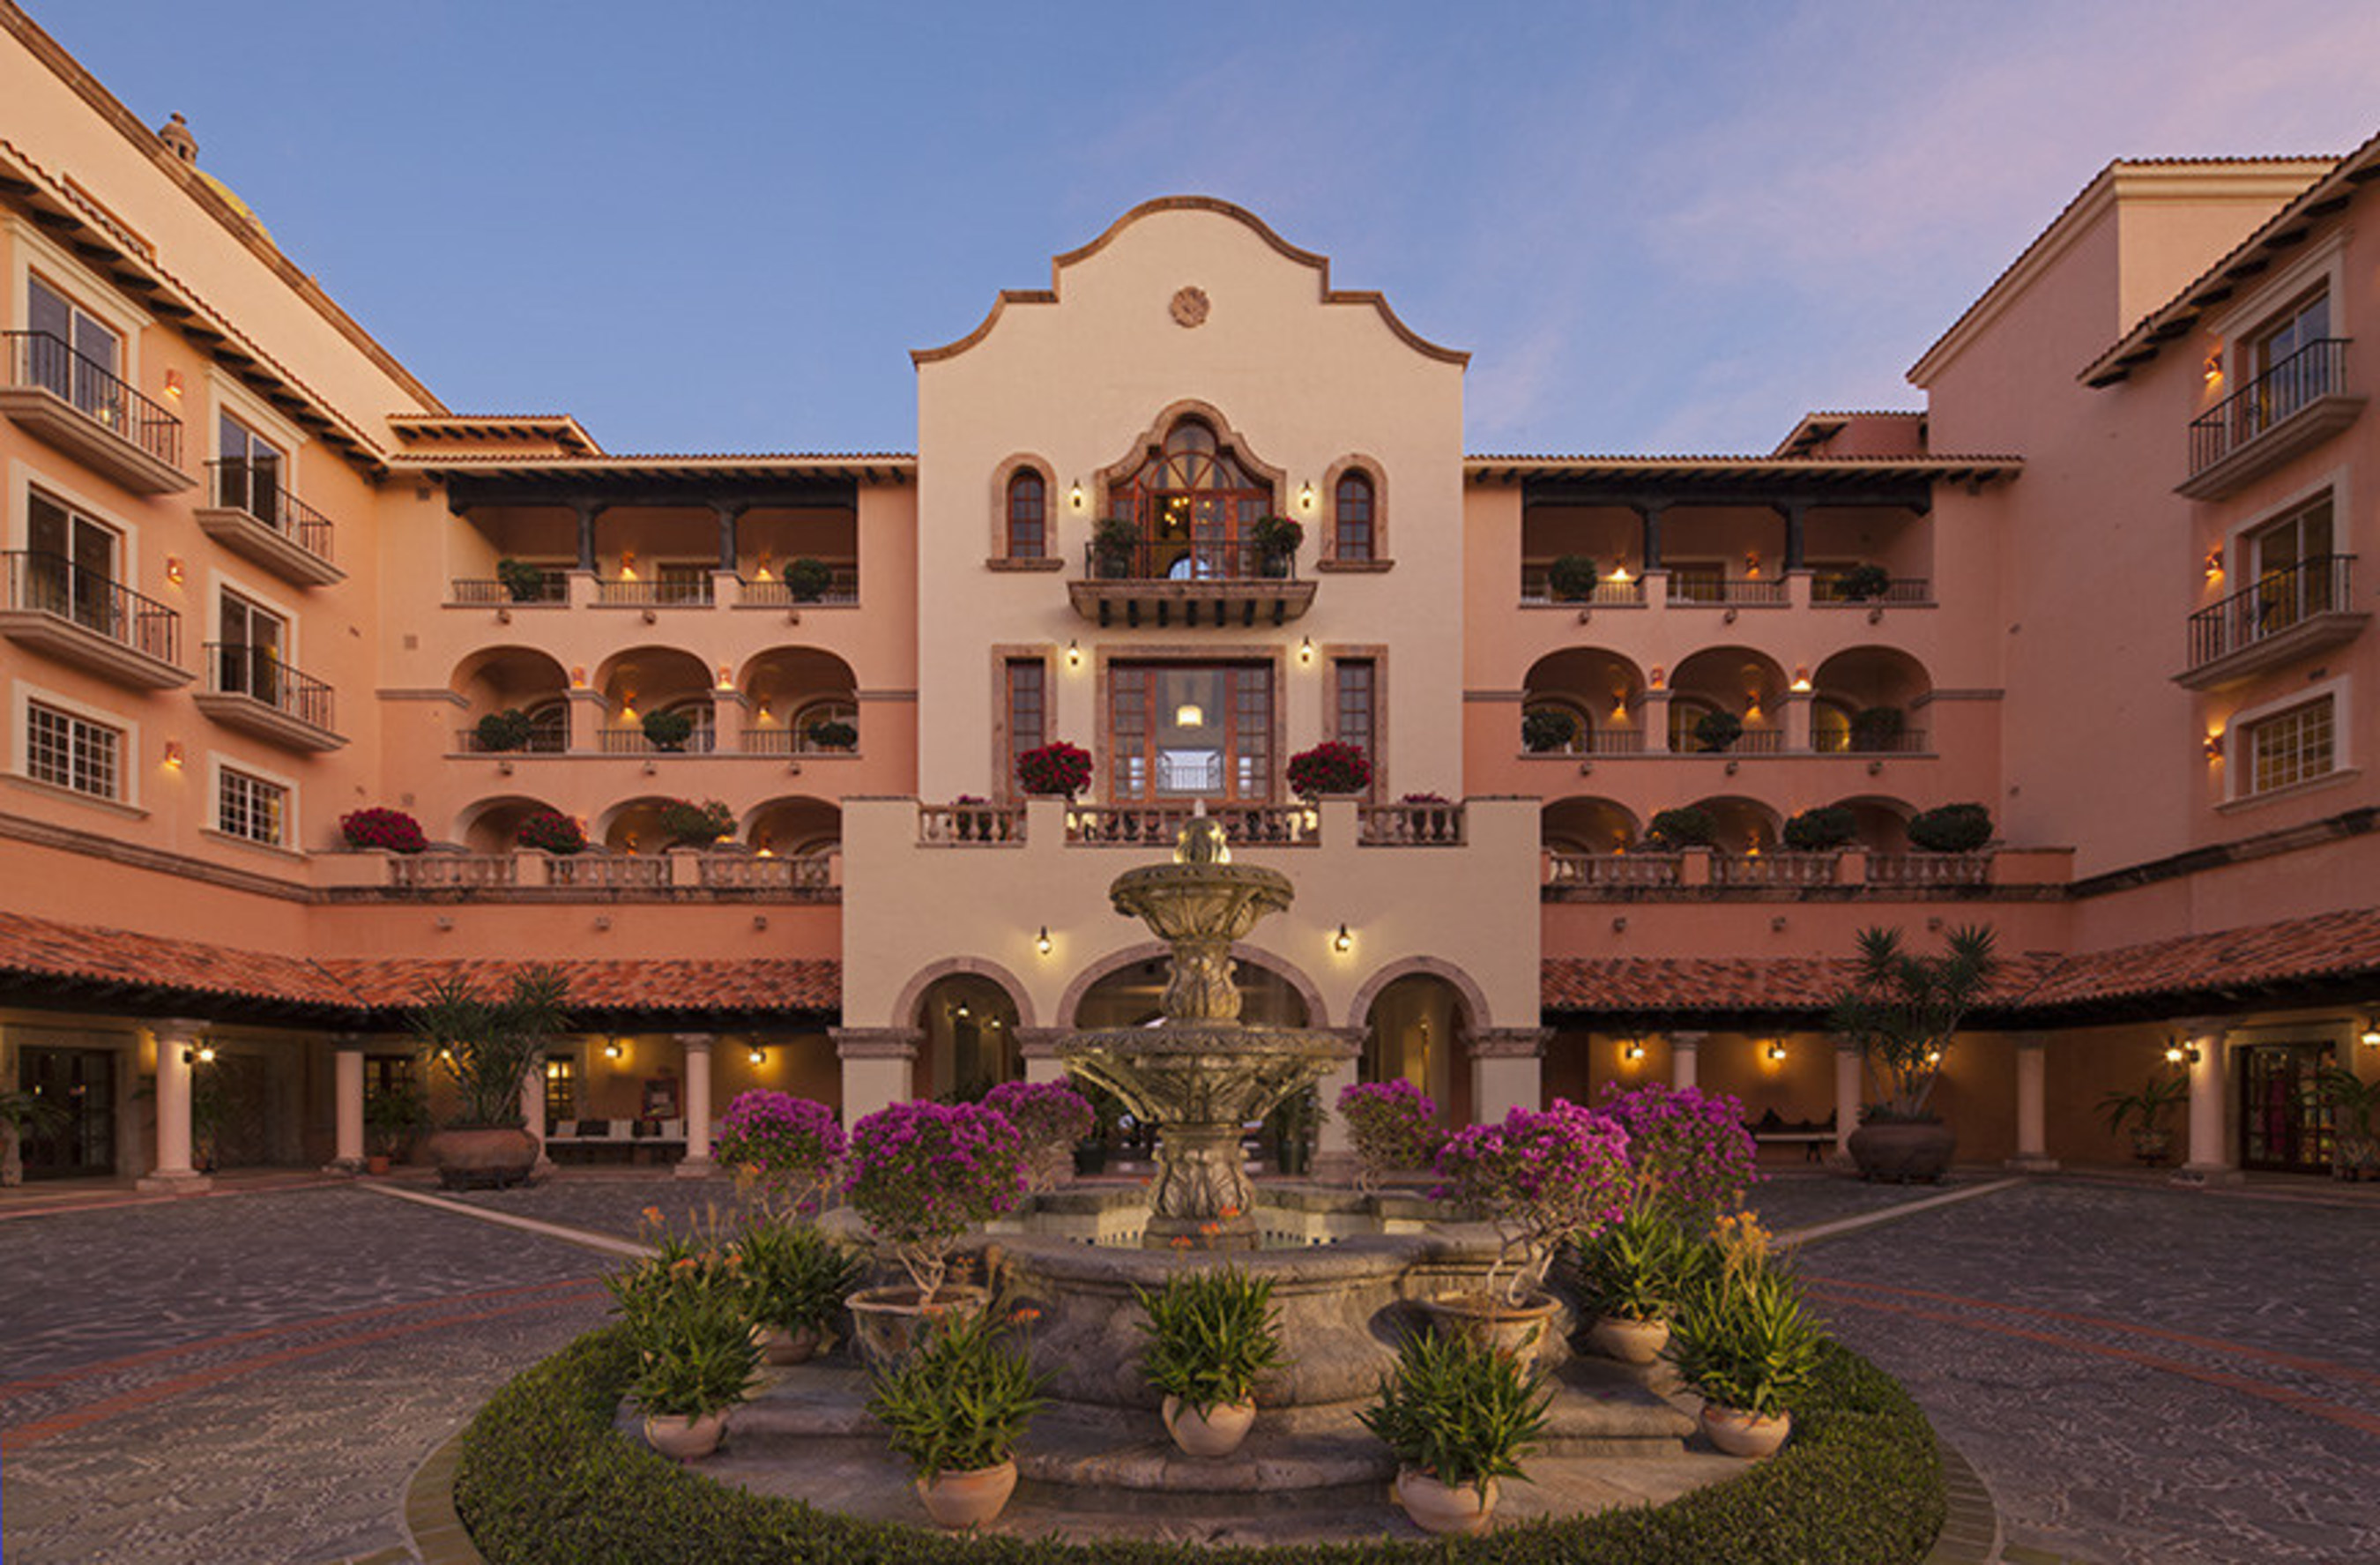 Sheraton Hacienda del Mar Golf & Spa Resort in Los Cabos Introduces ...